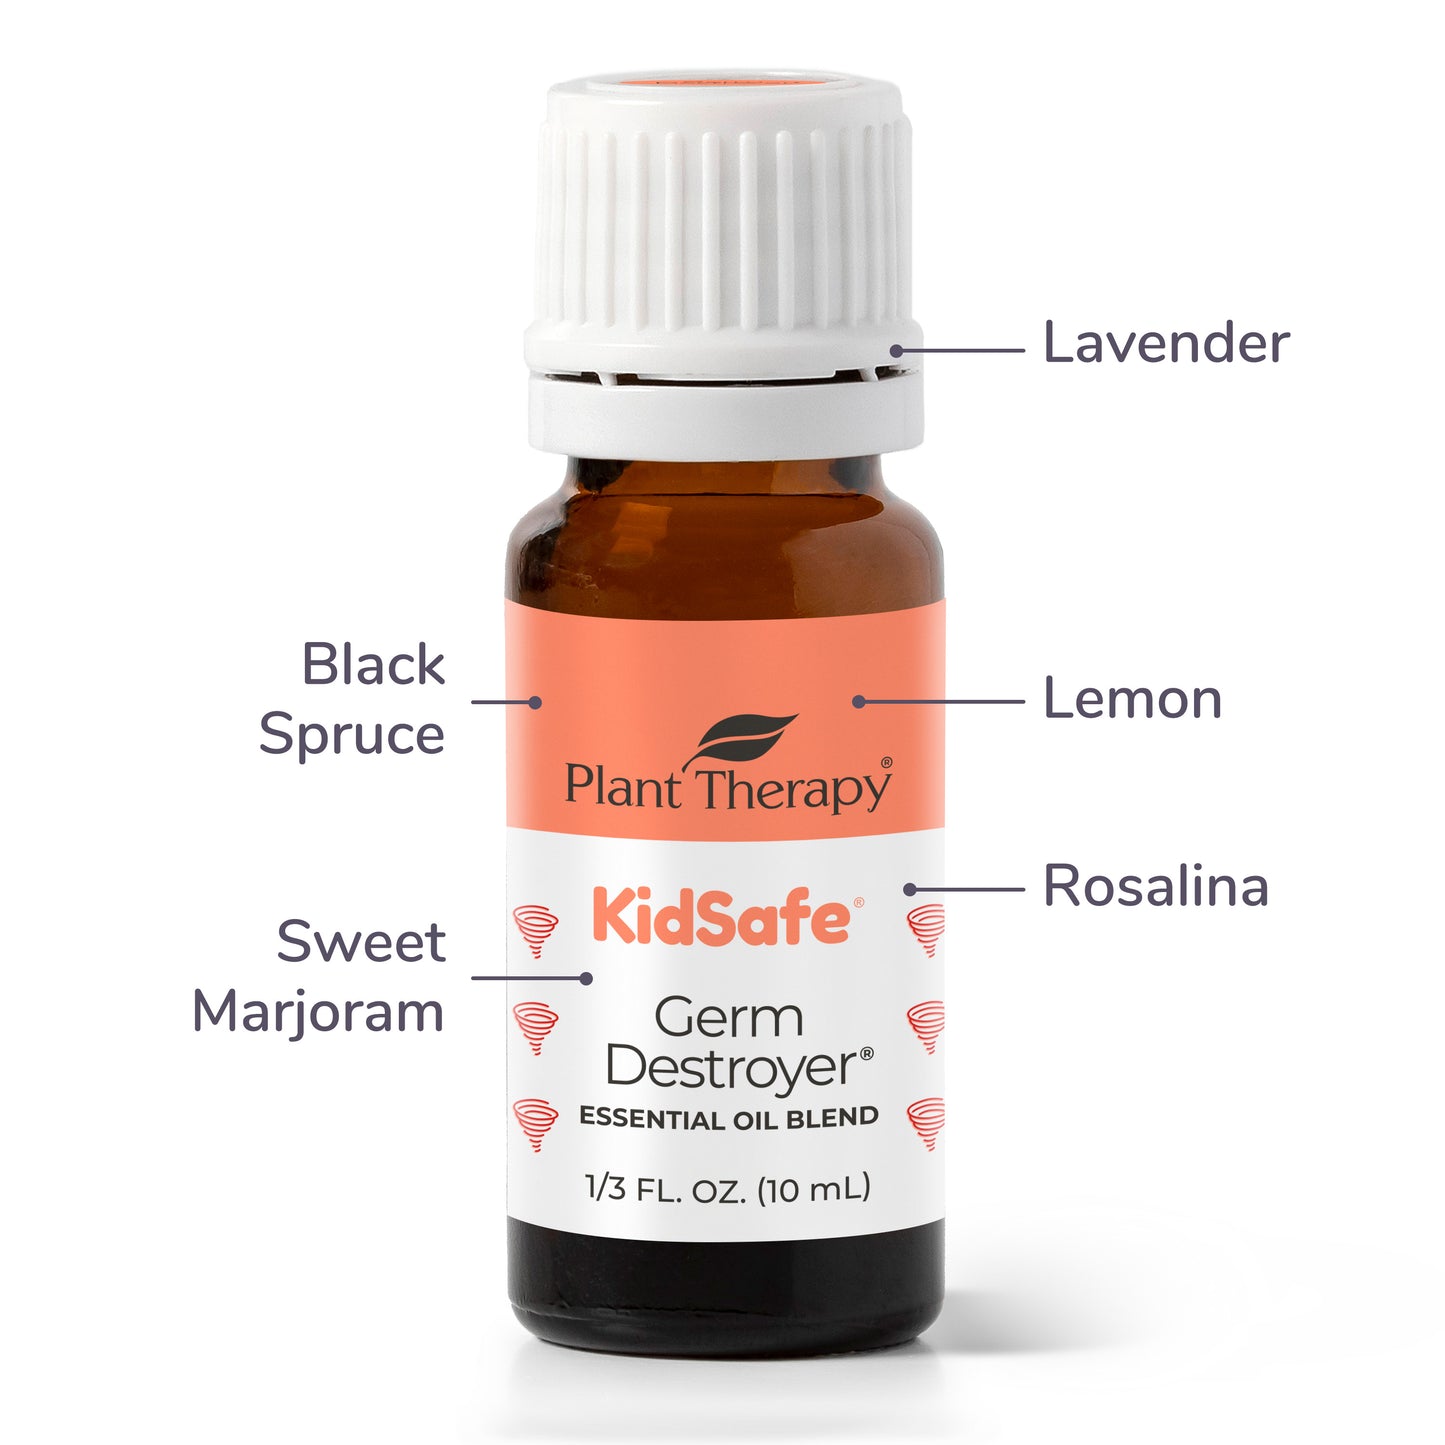 Kid-Safe Essential Oils for Dr. Mom™